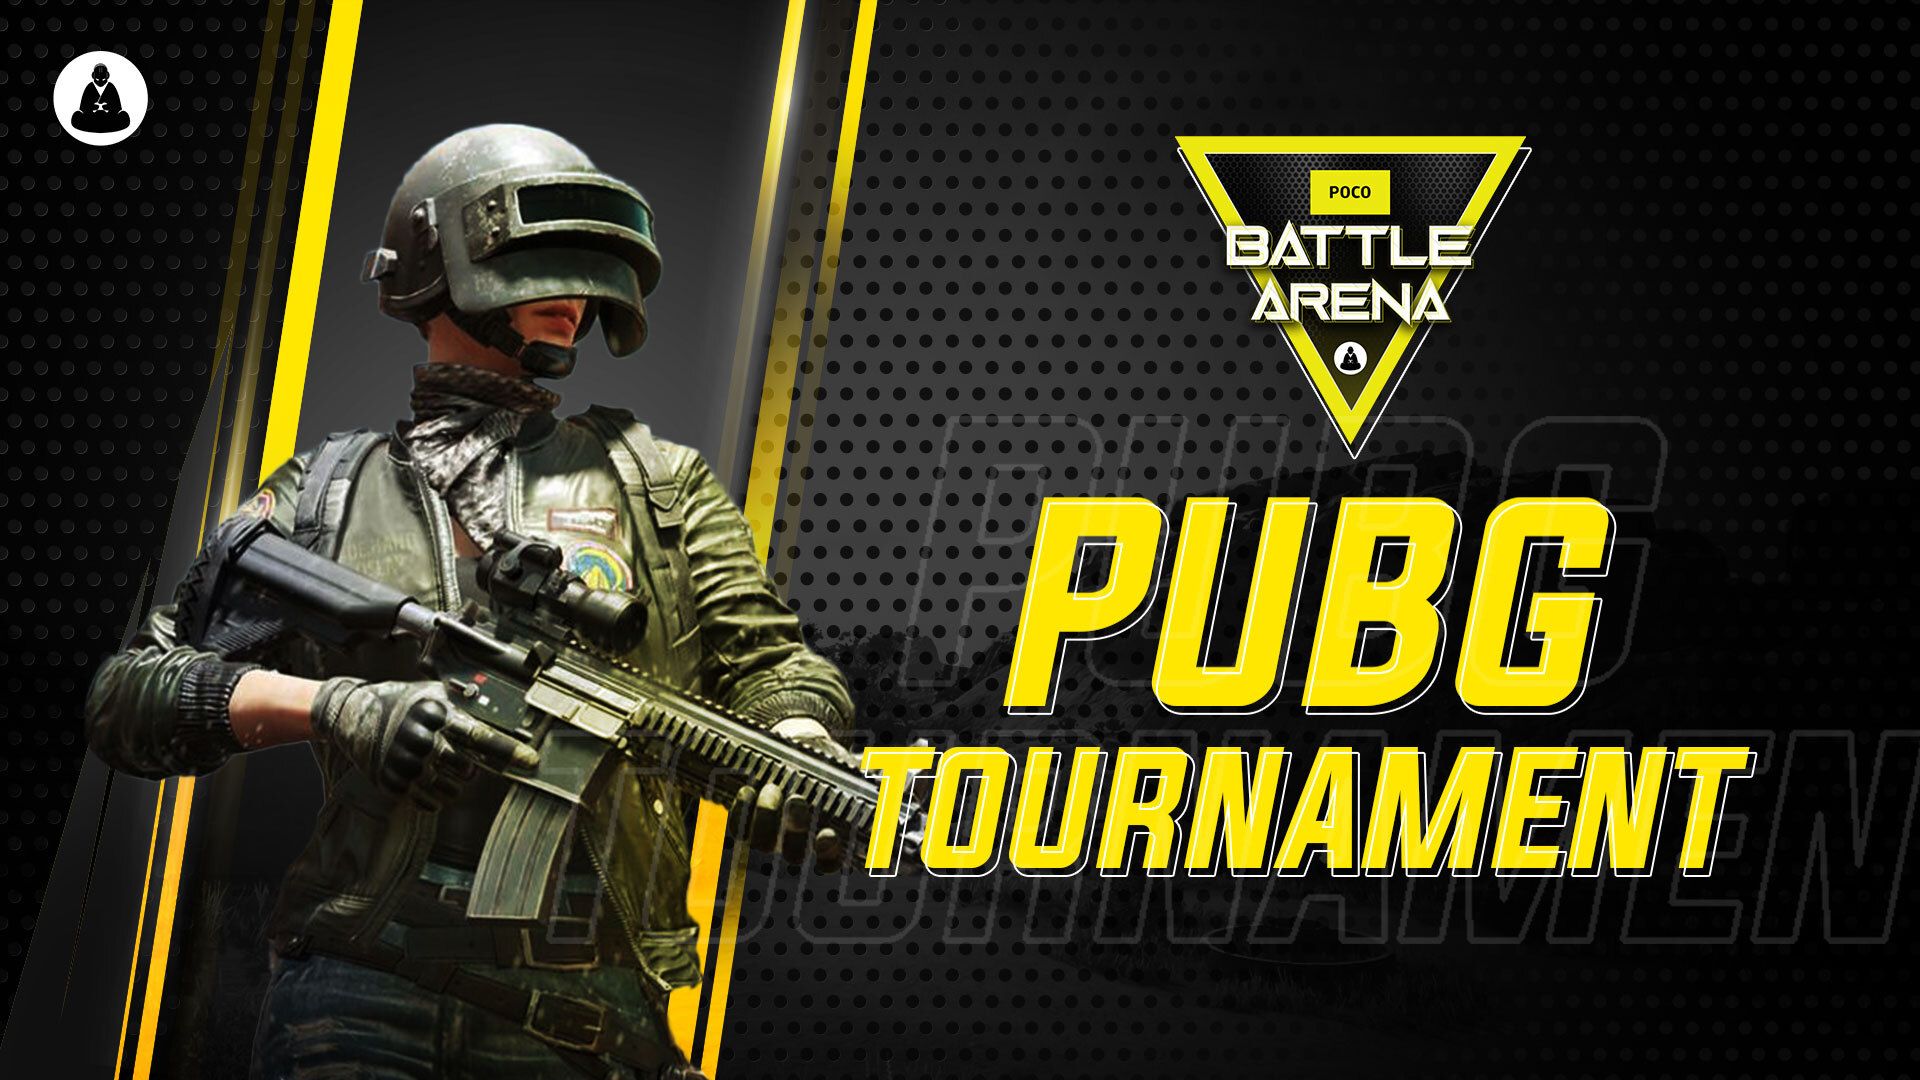 PUBG Mobile POCO Battle Arena Tournament Live 16th July semifinal